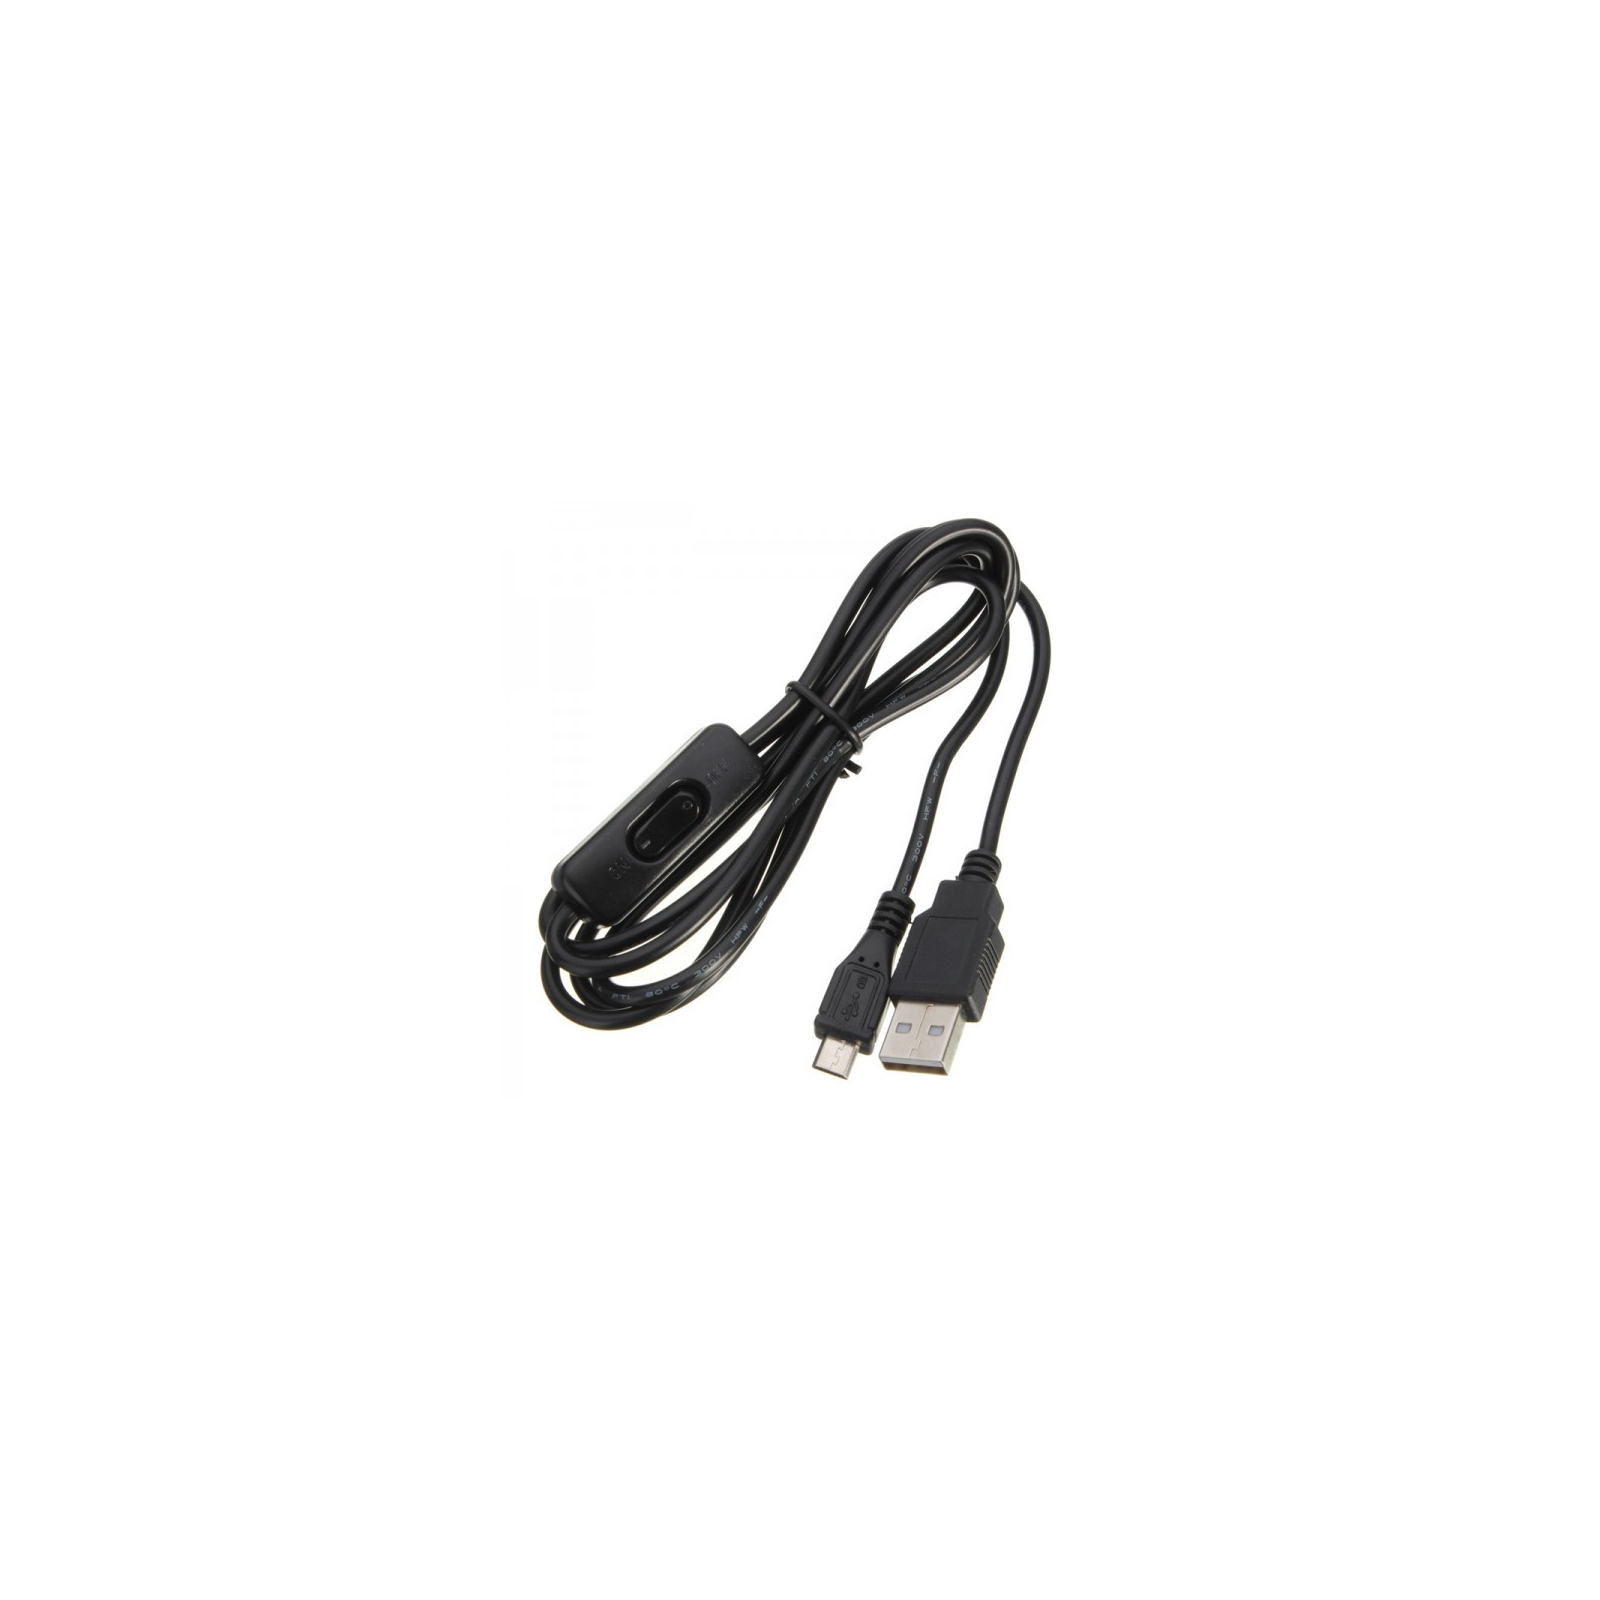 Дополнительное оборудование к промышленному ПК Raspberry Pi кабель USB Type C с выключателем, 1.5м для Pi 4B (RA607)